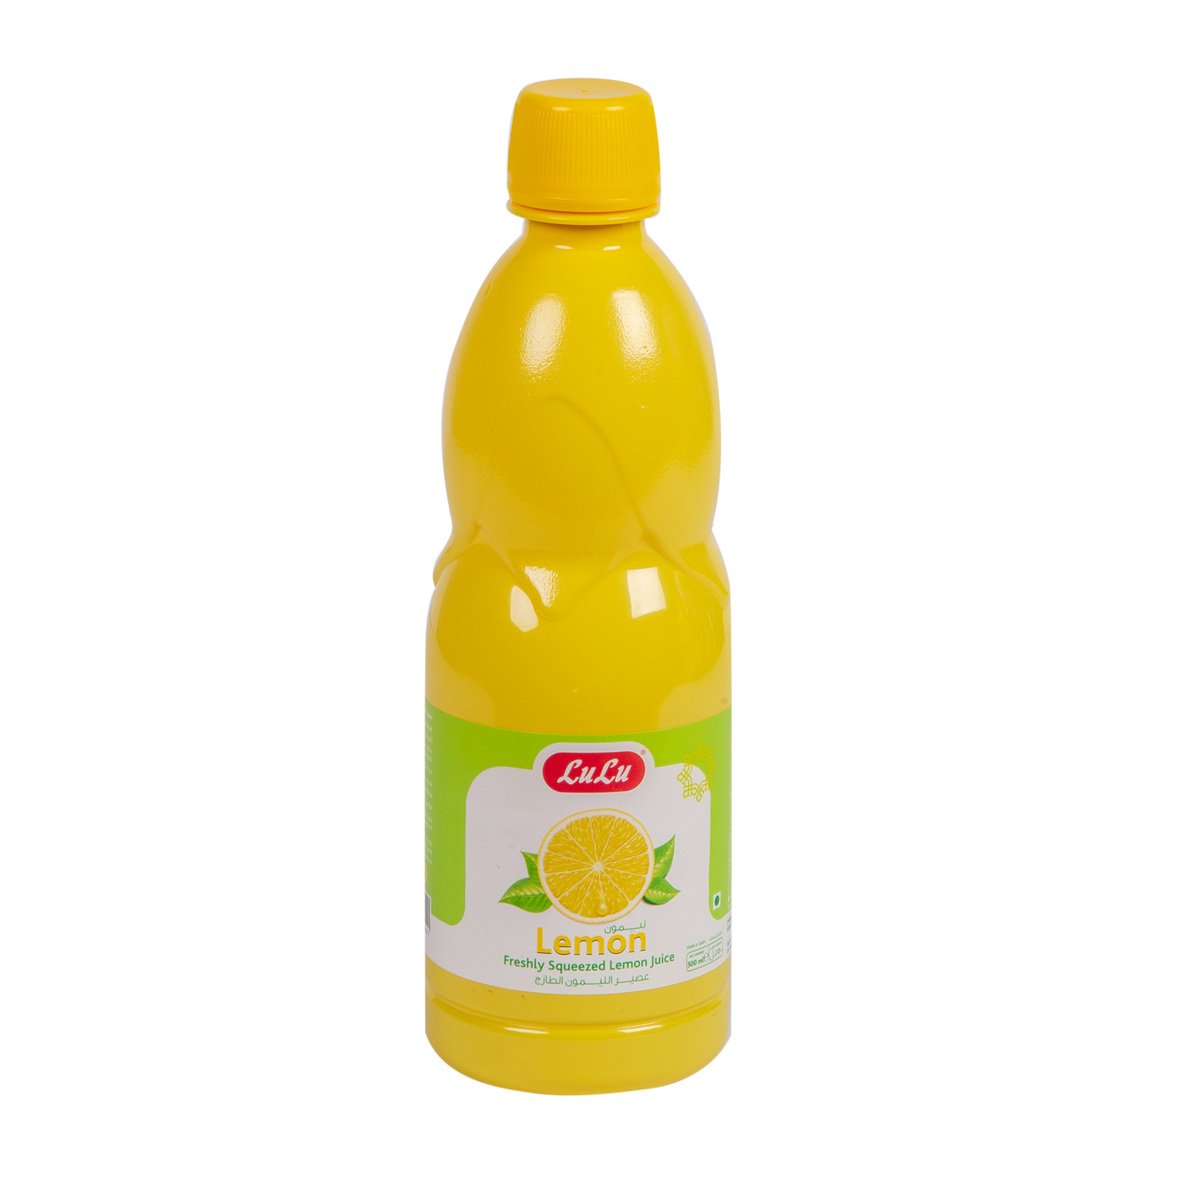 LuLu Freshly Squeezed Lemon juice 500 ml Online at Best Price